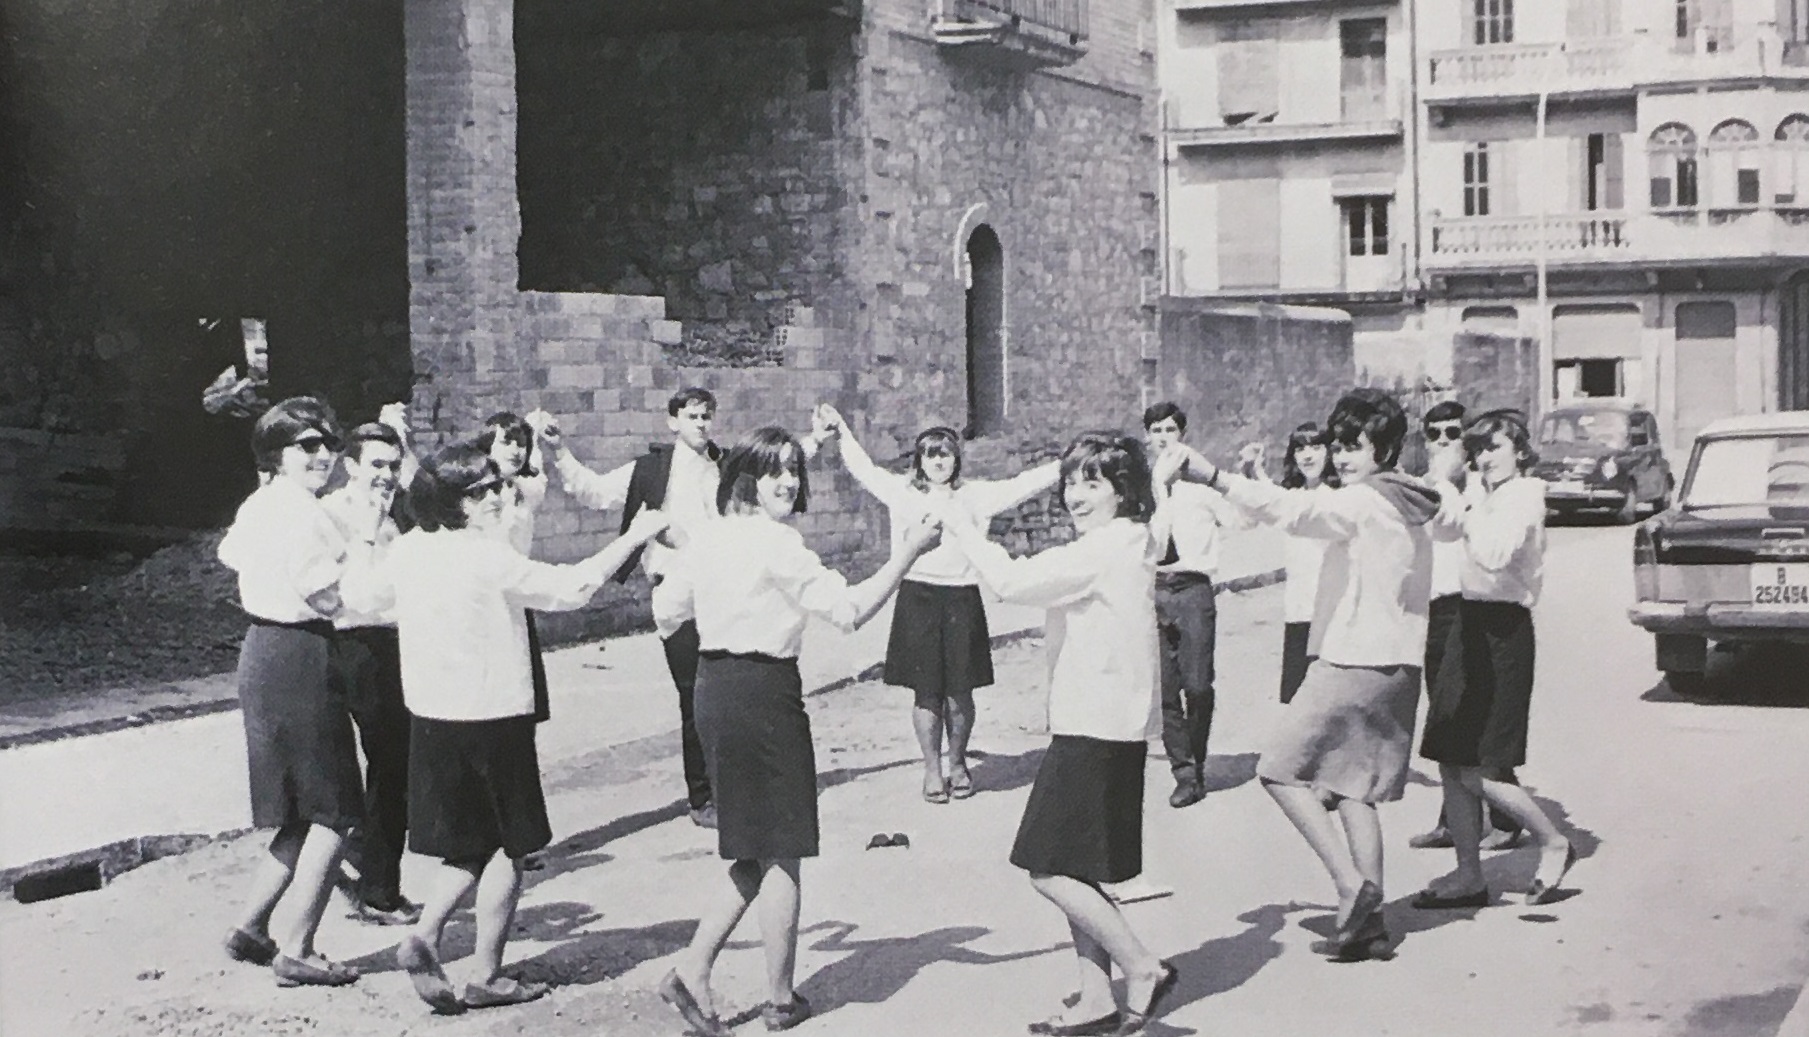 DÃ¨cada de 1960 - Colla caramellaire de joves vinculats al moviment sardanista i el Centre Parroquial (font: llibre 'Les Caramelles de SÃºria' de NÃºria Balaguer i Riera).